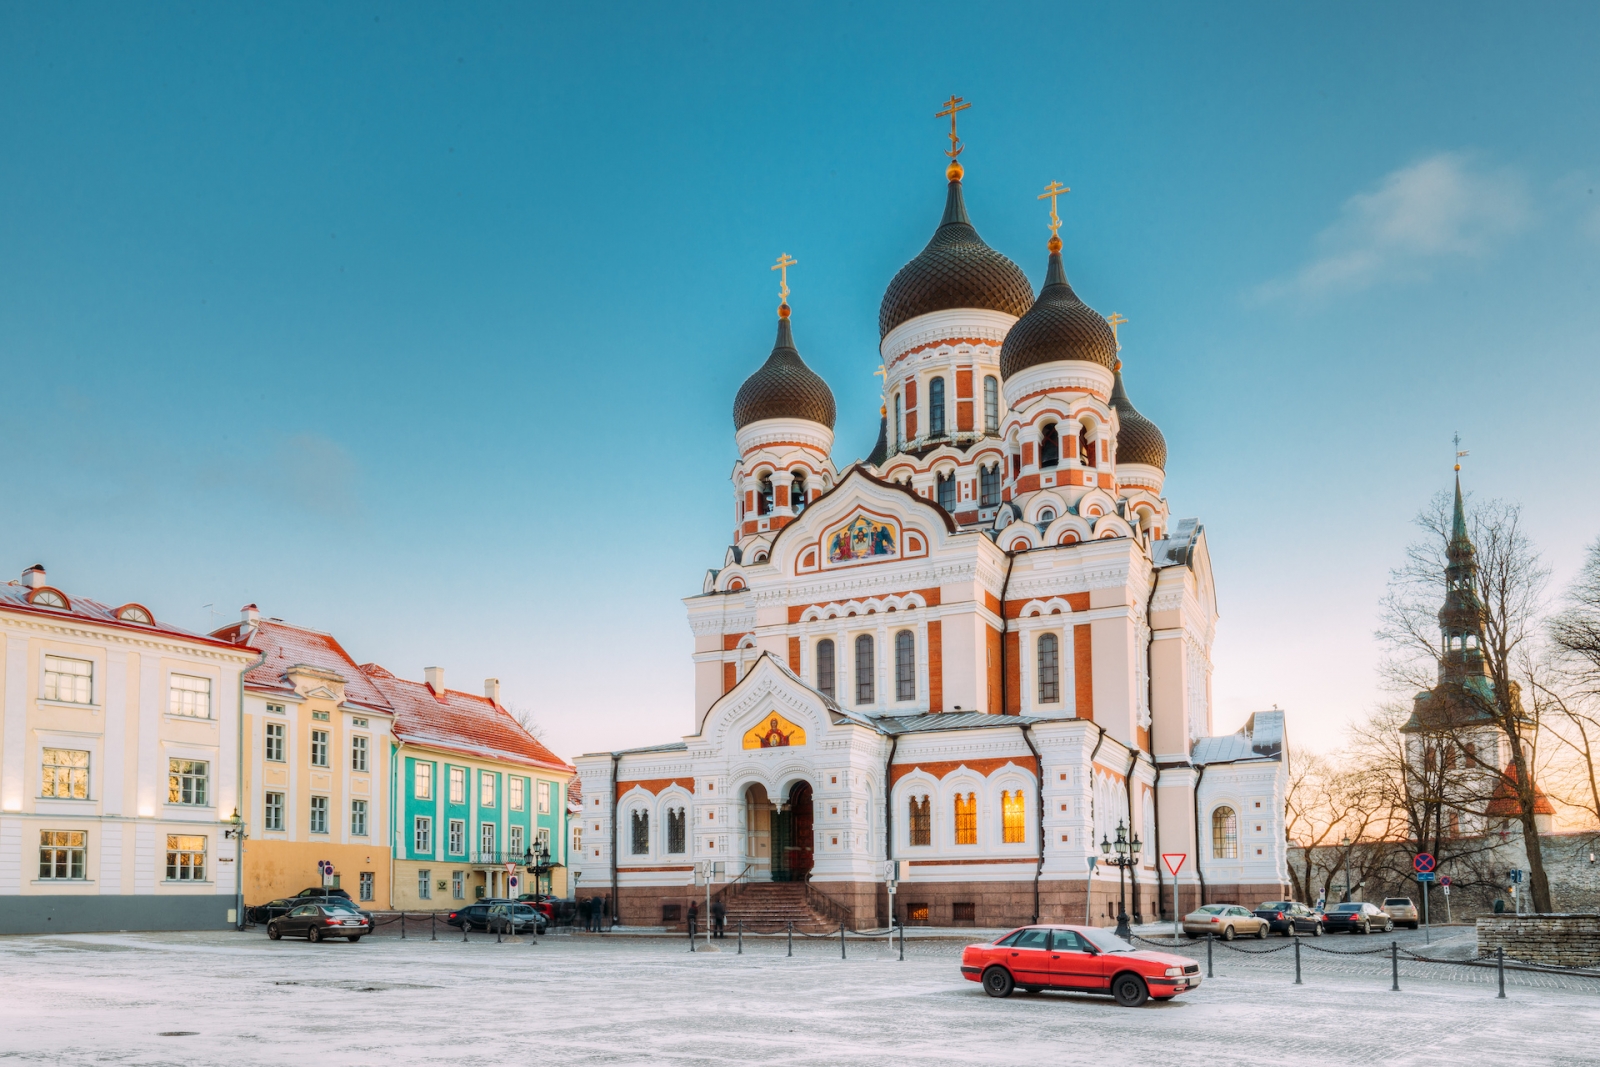 Tallin, Estonia.  Vista De La Mañana De La Catedral De Alexander Nevsky.  La famosa catedral ortodoxa es la catedral de cúpula ortodoxa más grande y grandiosa de Tallin.